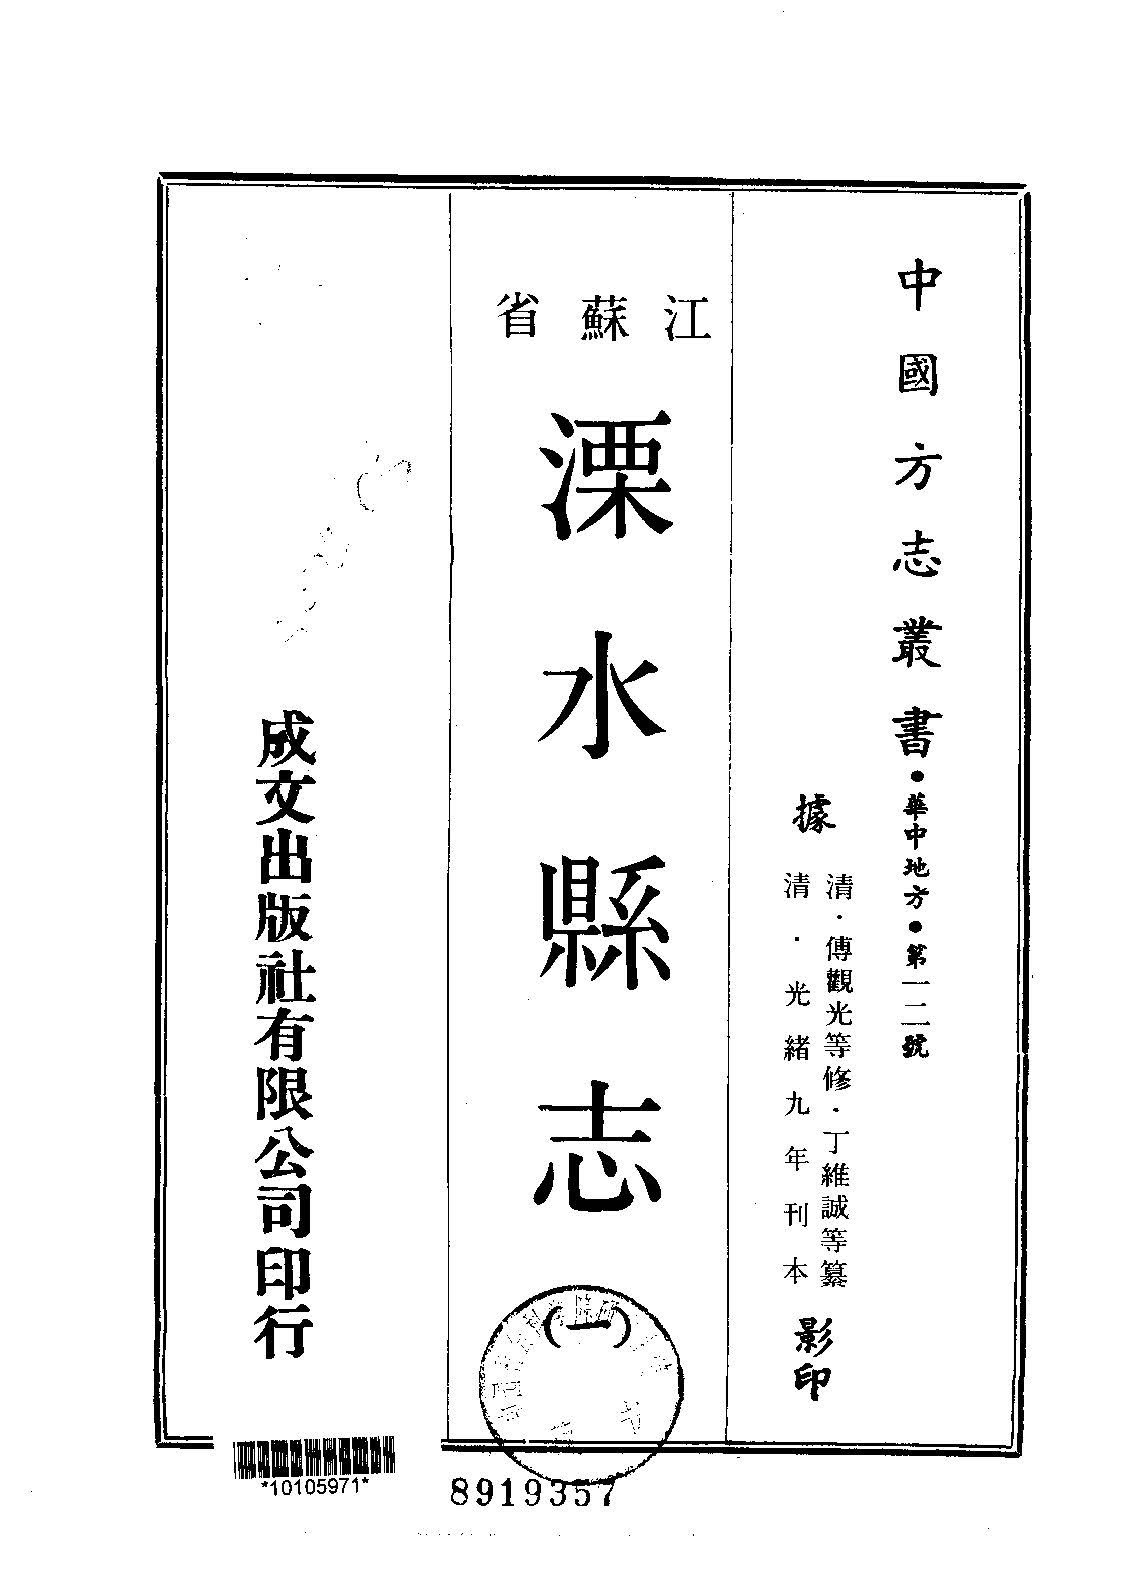 溧水县志的书籍封面